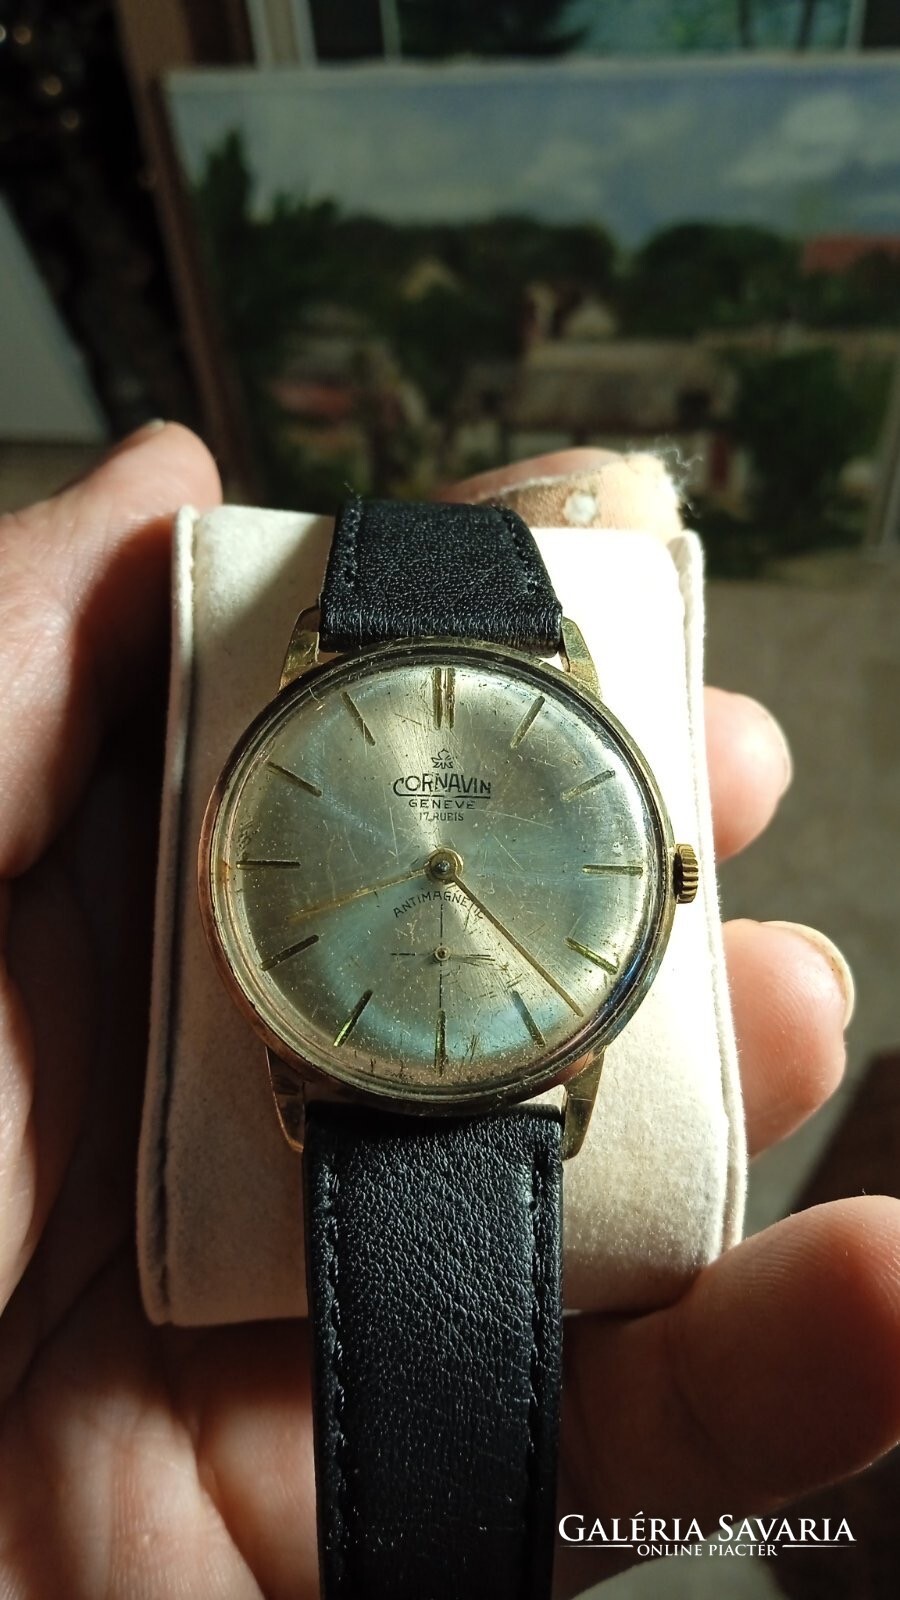 Almera 24K Altın Kaplama Yıldız Motifli Vintage Kol Saati SAAT vintagezegeni